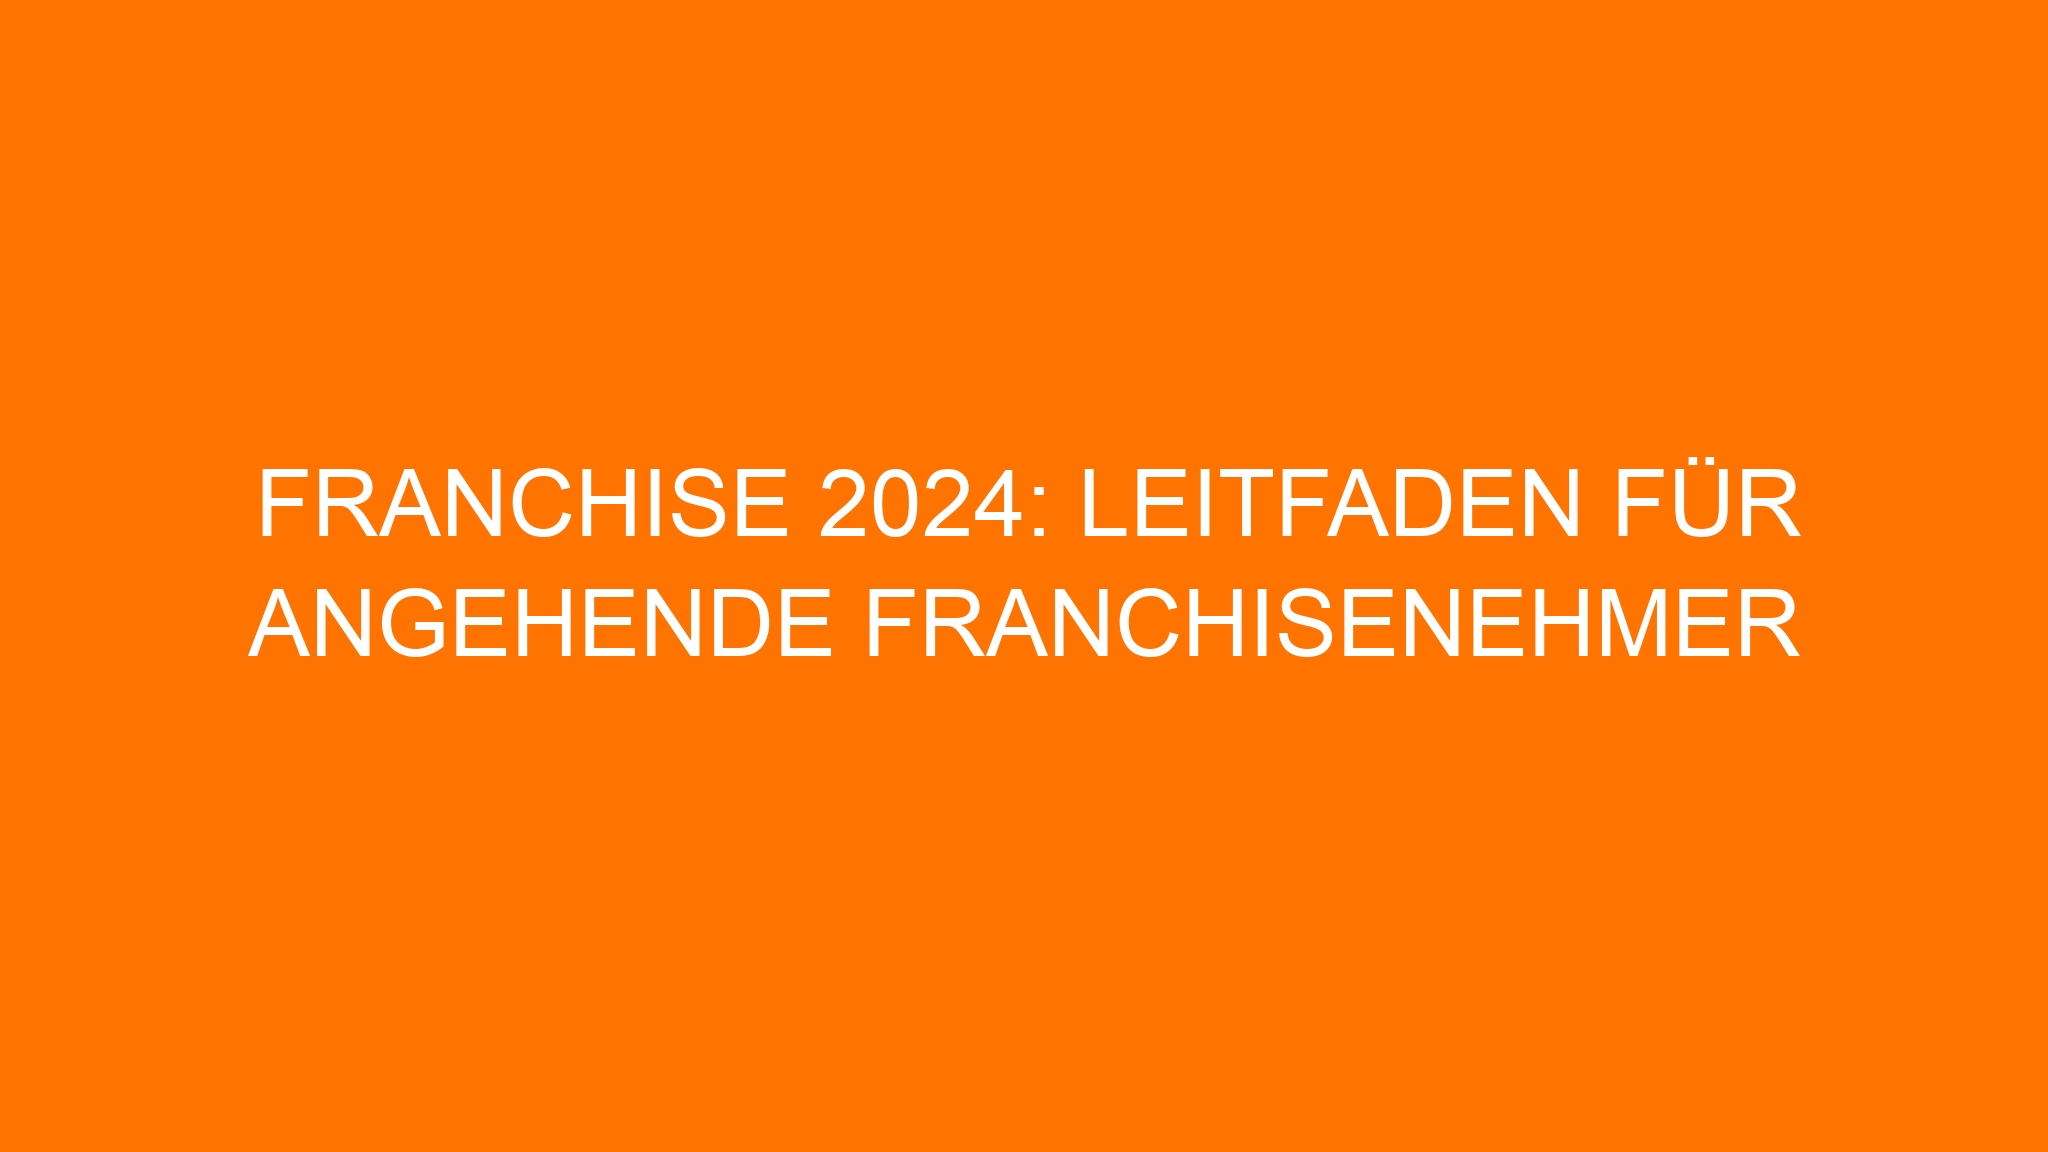 Franchise 2024: Leitfaden für angehende Franchisenehmer